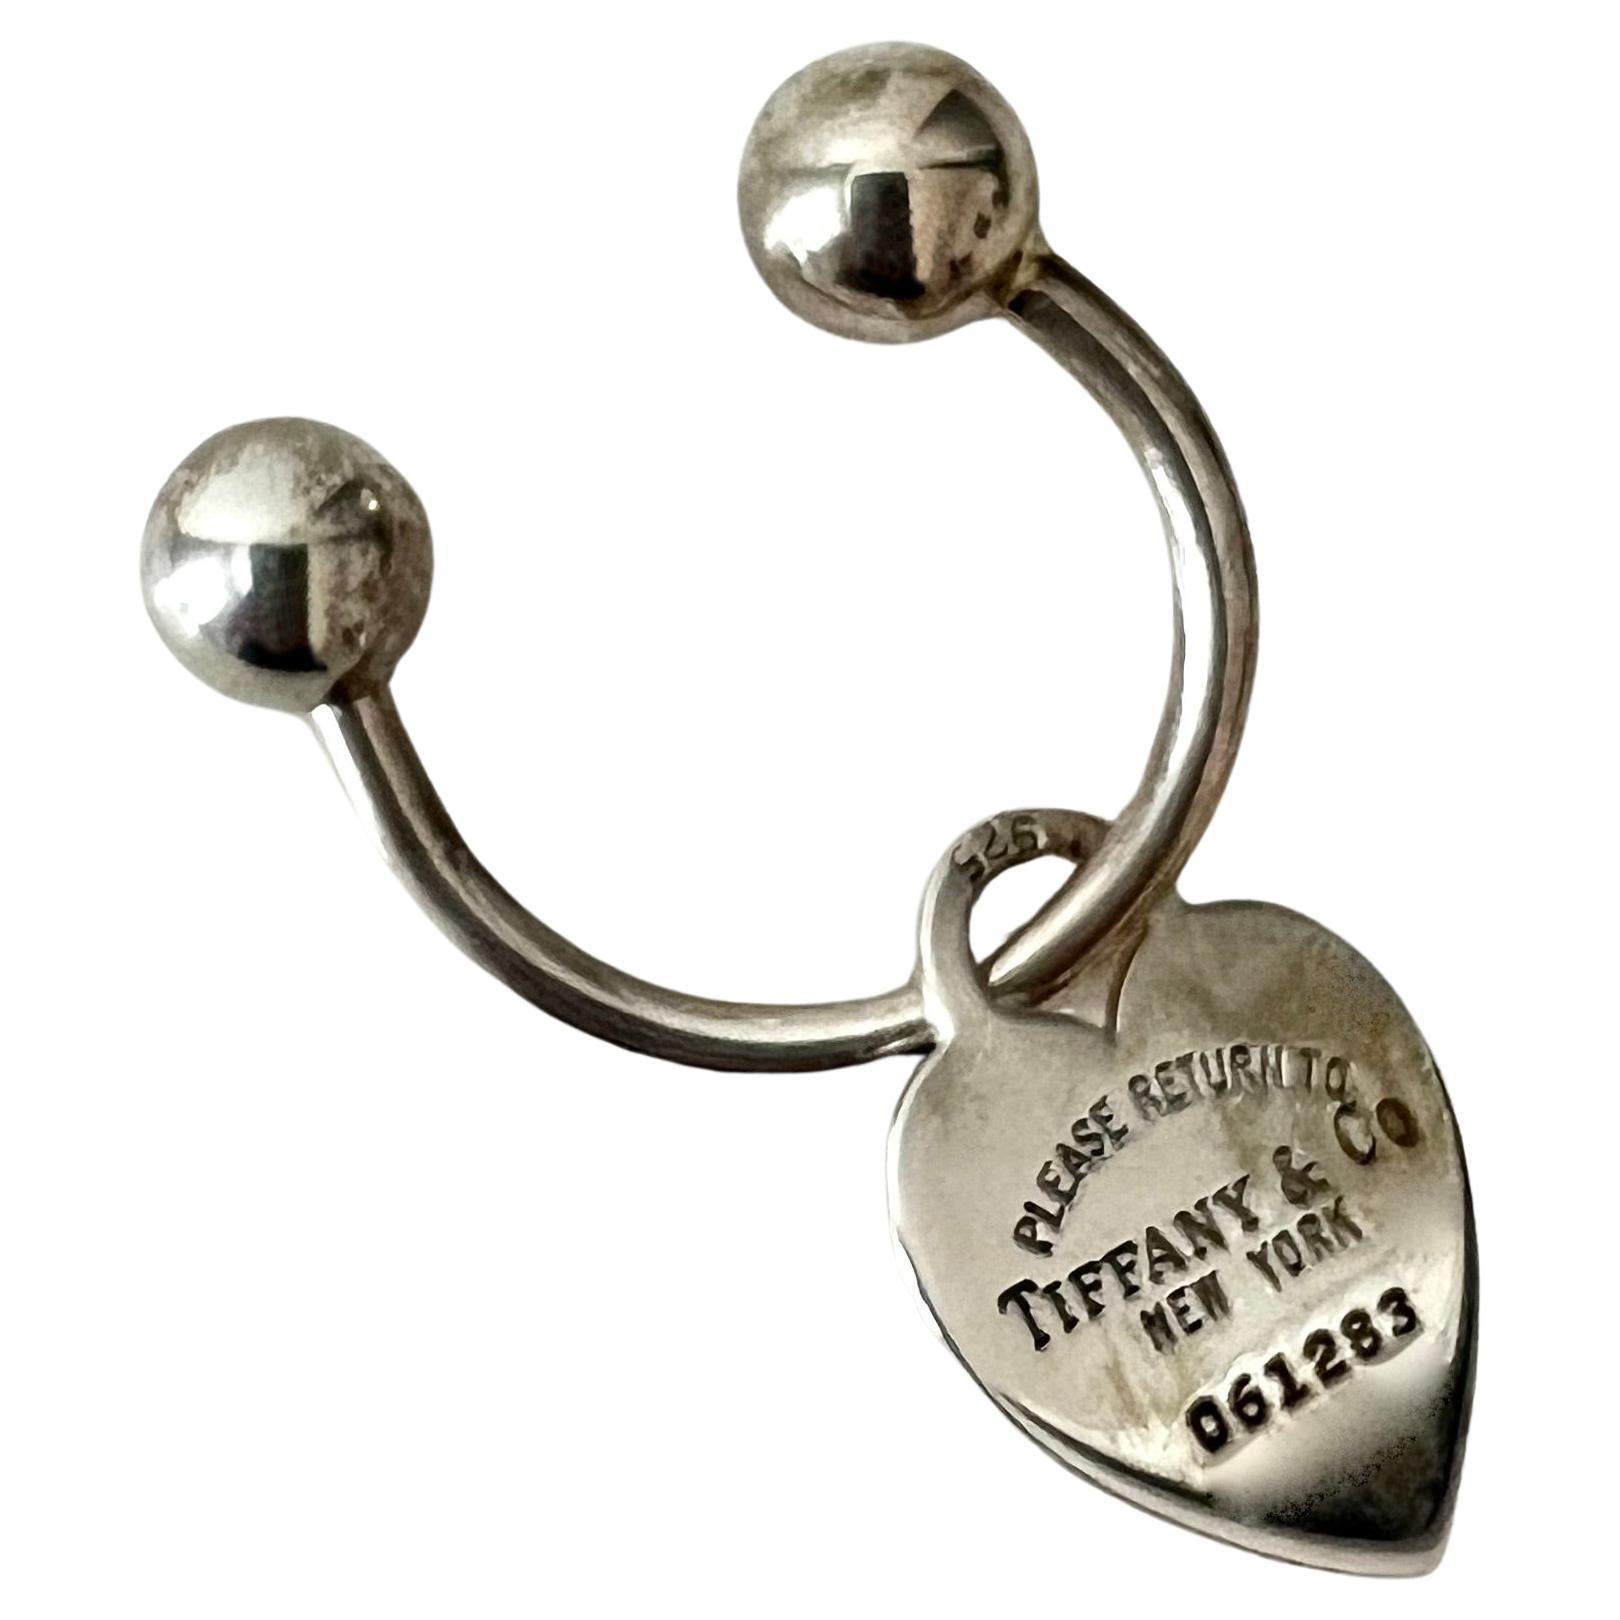 Tiffany & Co Sterlingsilber-Schlüsselkette mit Herz  Rücksendeadresse und blaue Tasche